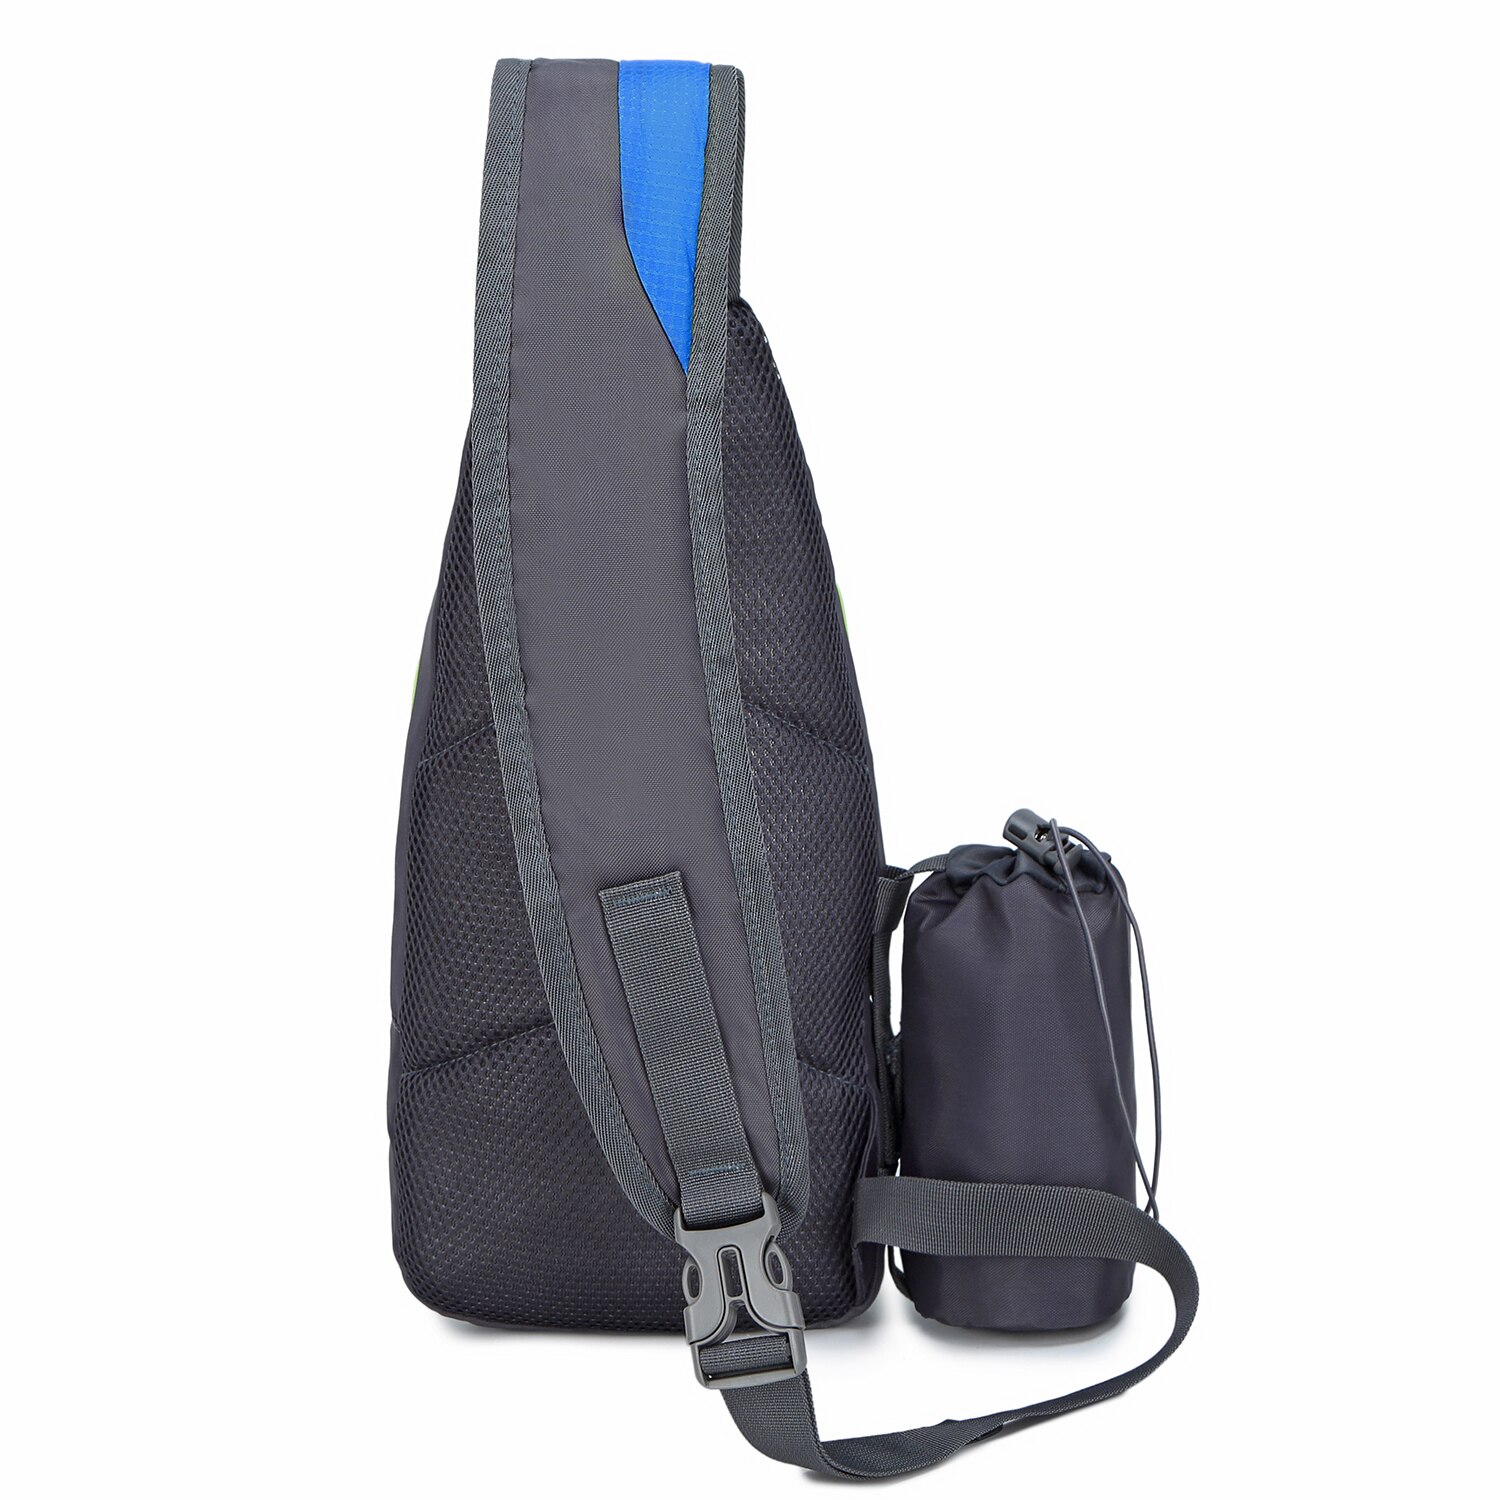 7l sejltaske kvinder mænd skulder rygsæk brystpakke kausal crossbody taske til cykling camping fanny pack hip bum bag